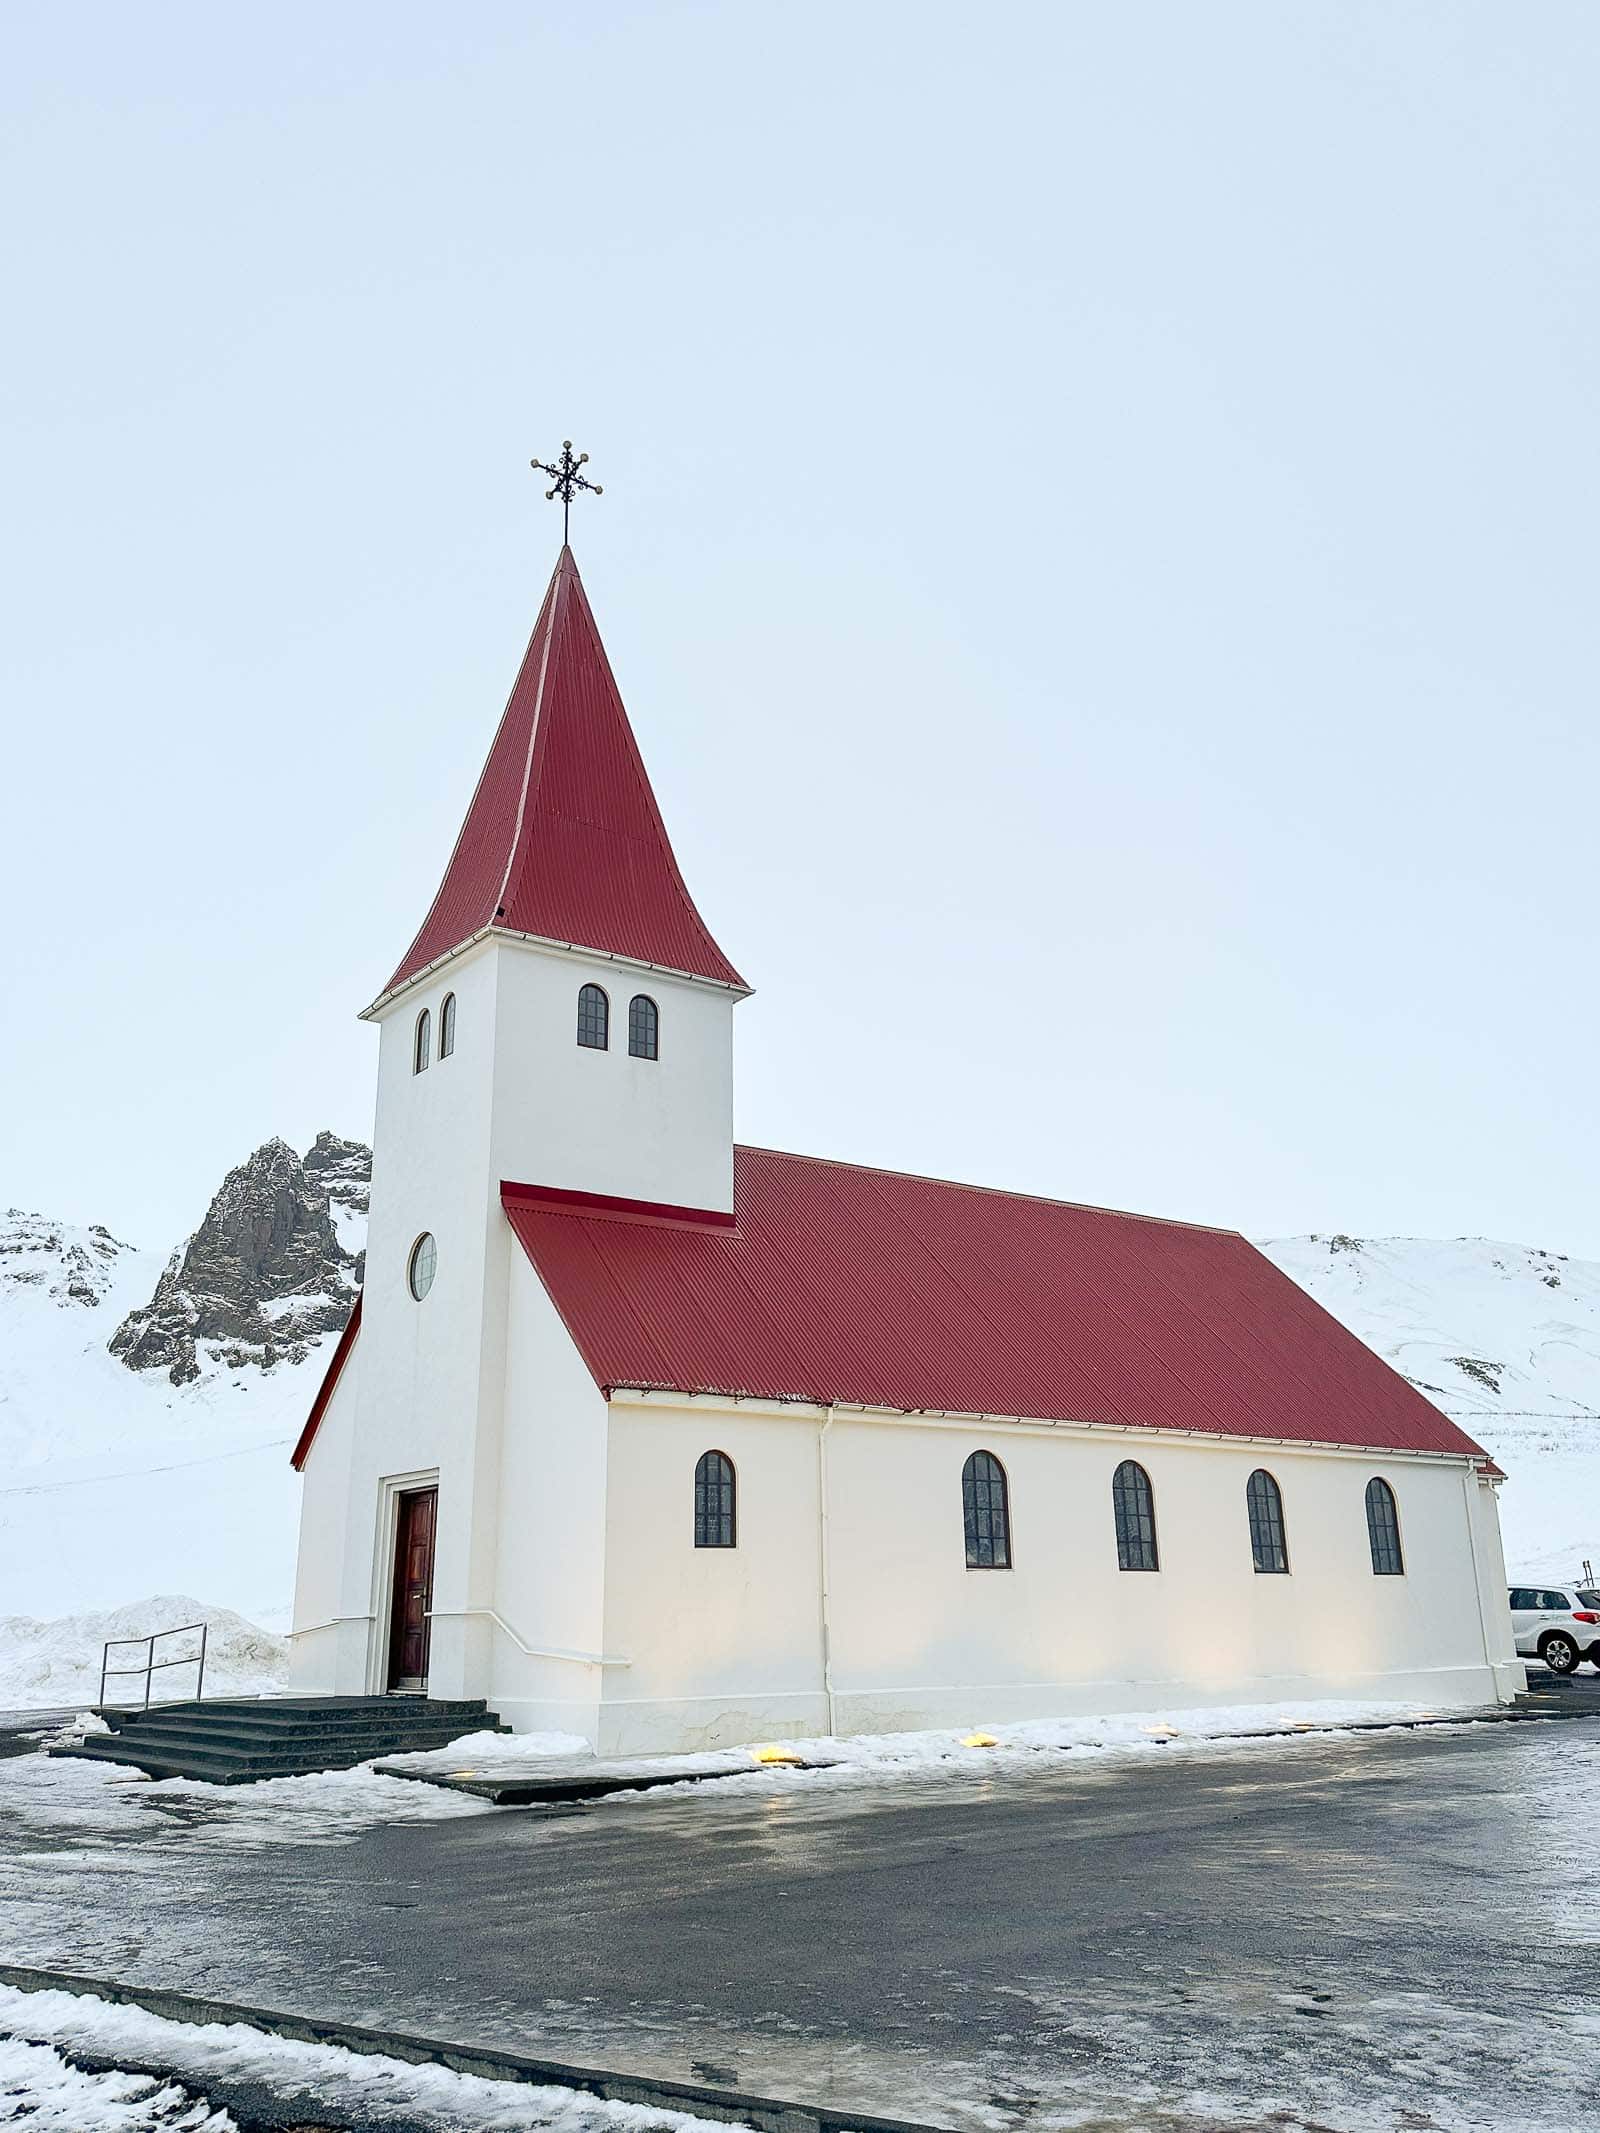 Reyniskirkja church overlooking the town of Vik